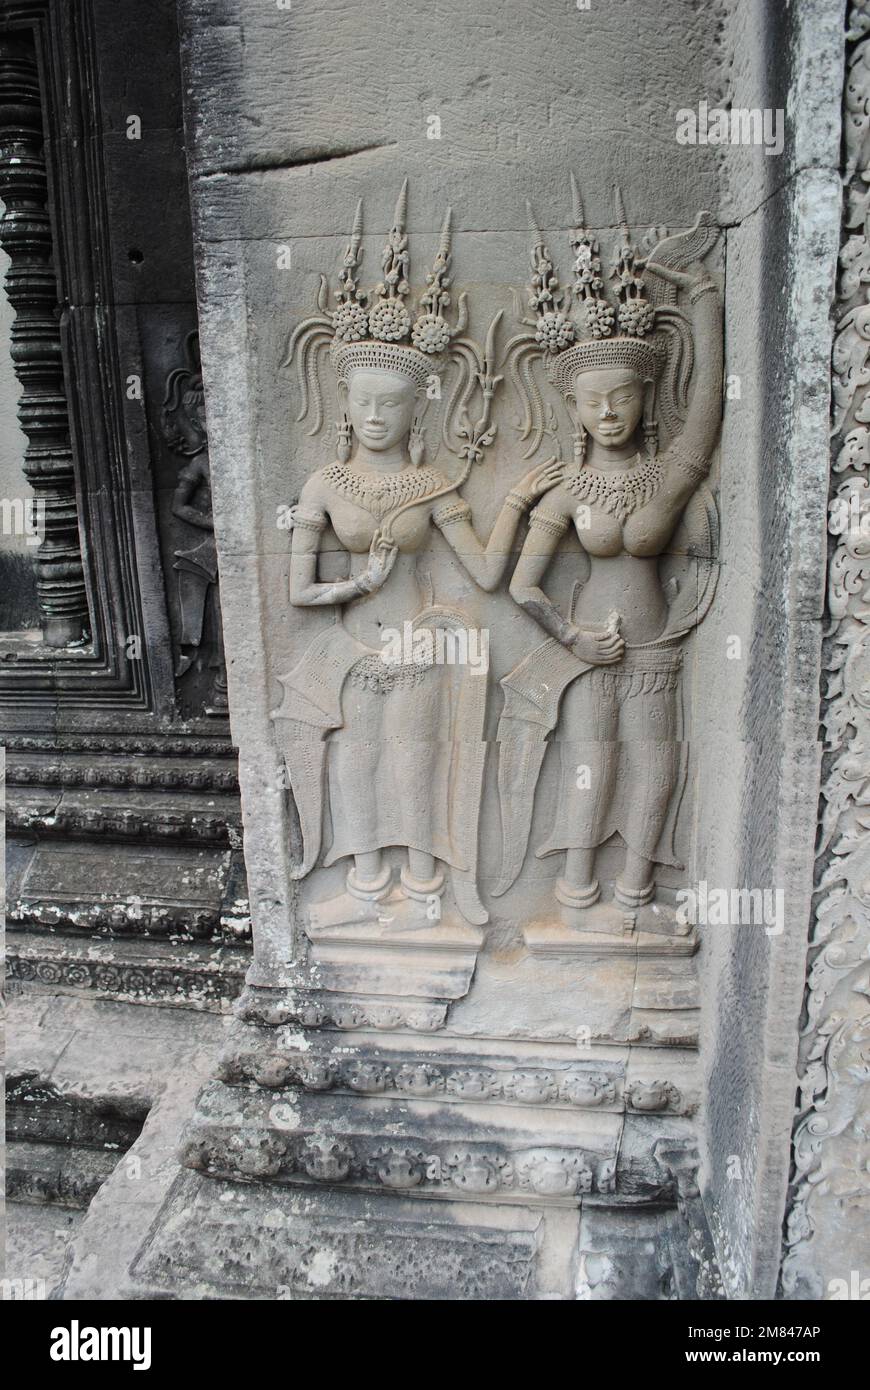 Blick und Details vom Angkor Wat Tempel Kambodscha 2013 Stockfoto